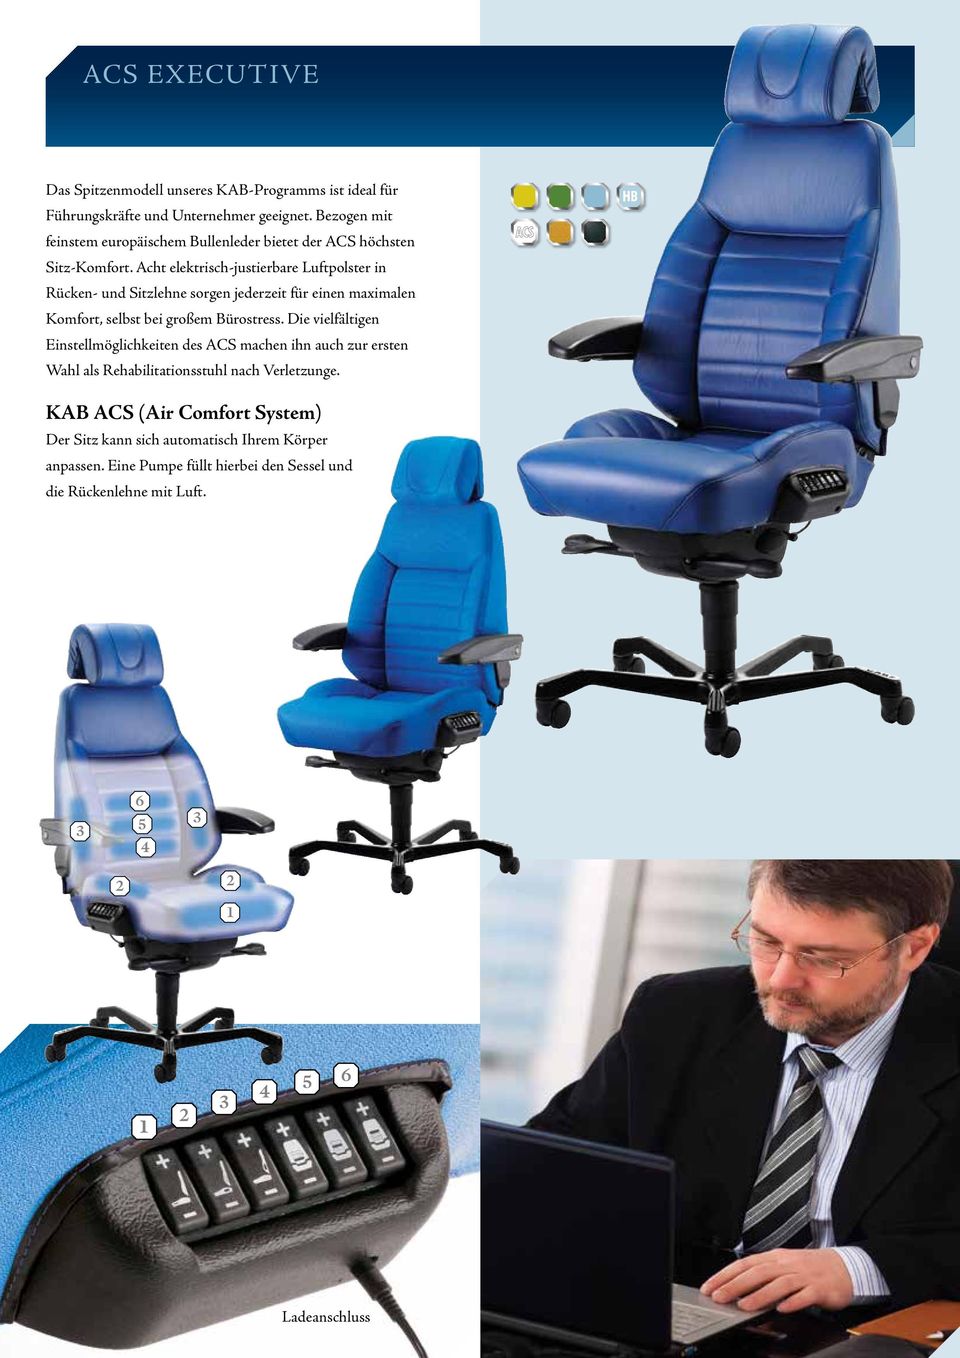 Acht elektrisch-justierbare Luftpolster in Rücken- und Sitzlehne sorgen jederzeit für einen maximalen Komfort, selbst bei großem Bürostress.